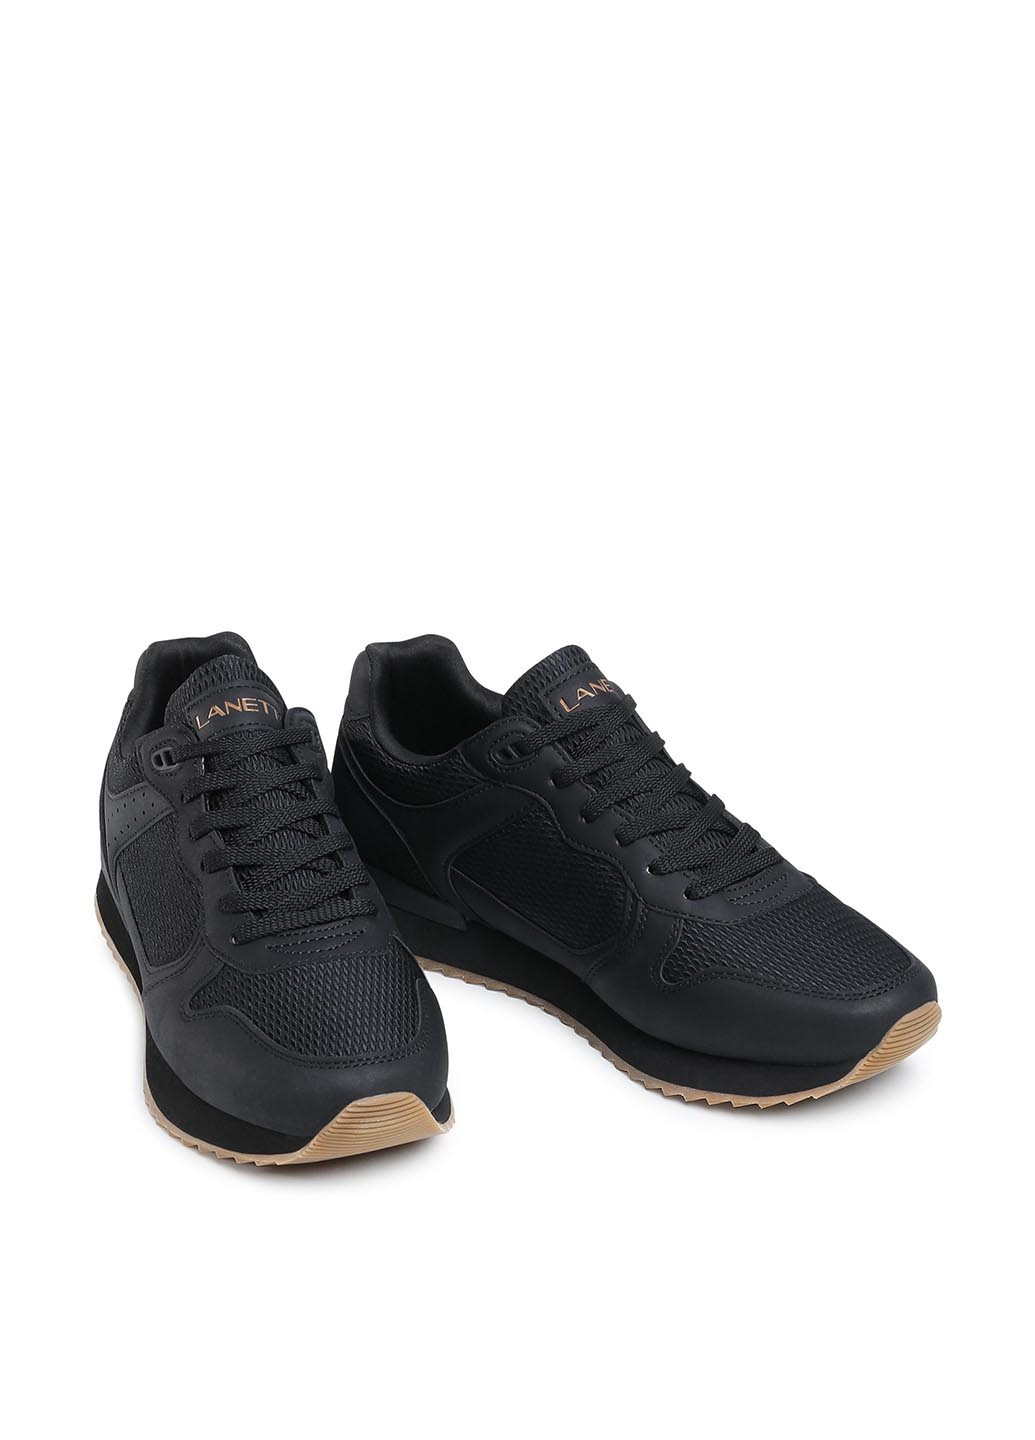 Чорні Осінні кросівки Lanetti MP07-01433-02